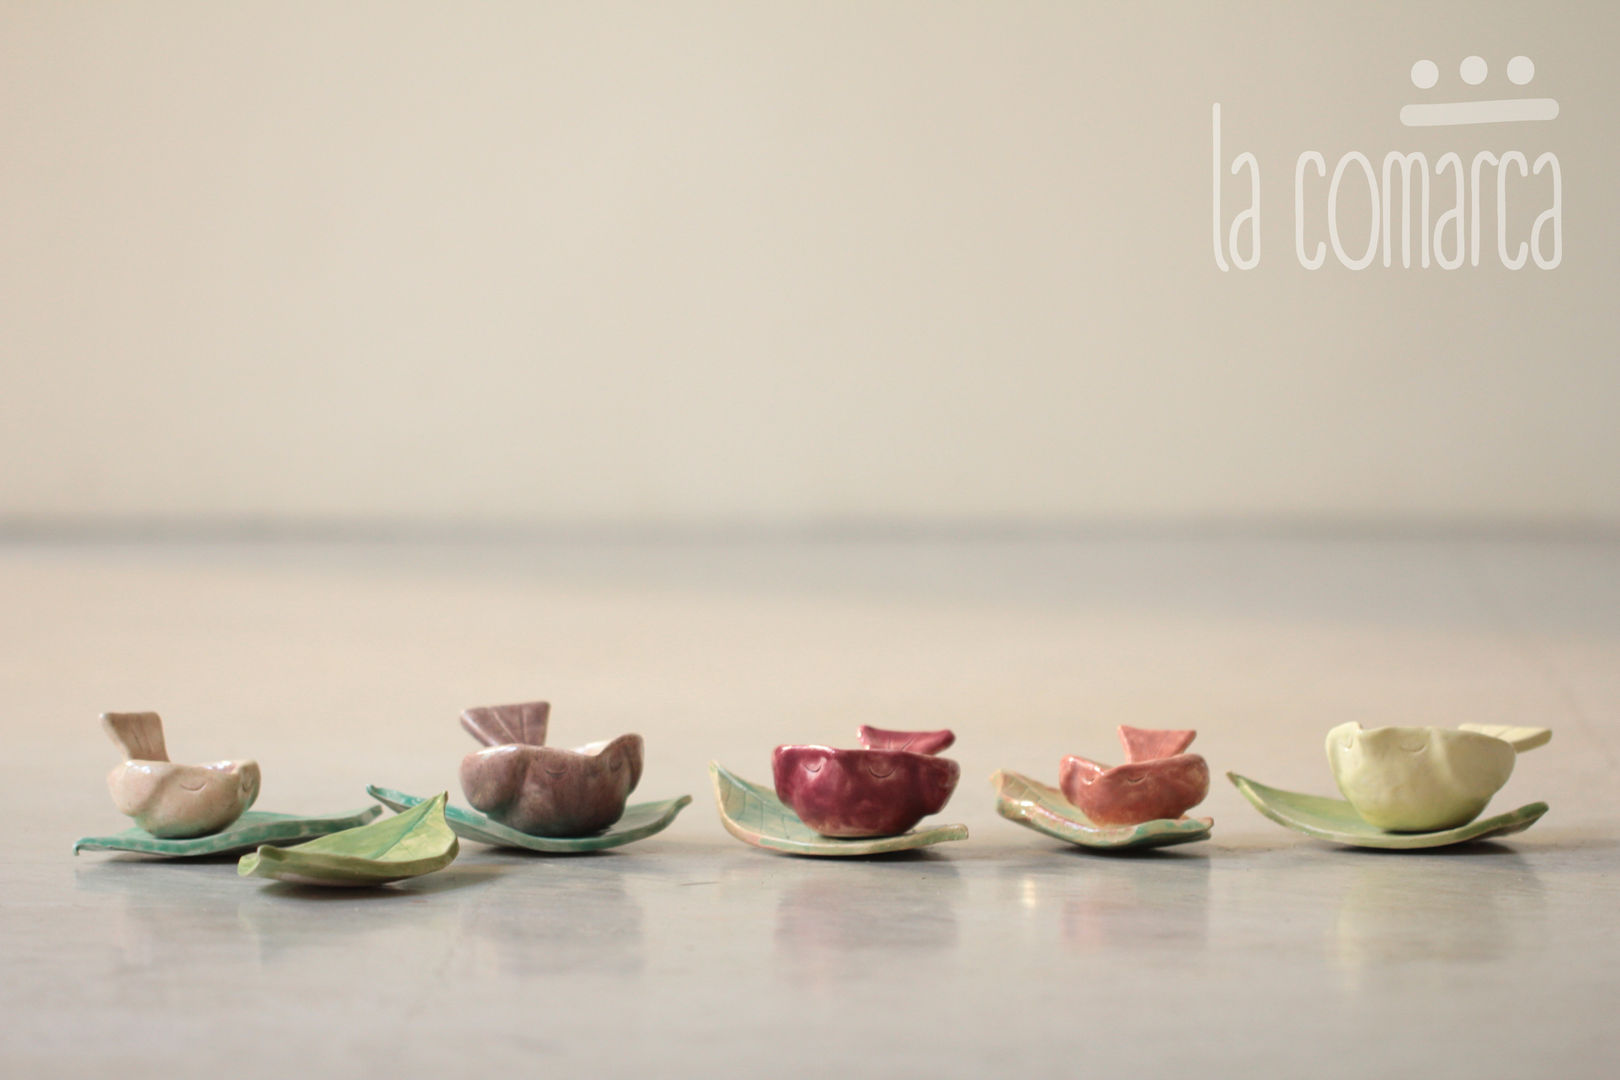 Objetos de decoración en cerámica, La comarca La comarca Modern kitchen Kitchen utensils